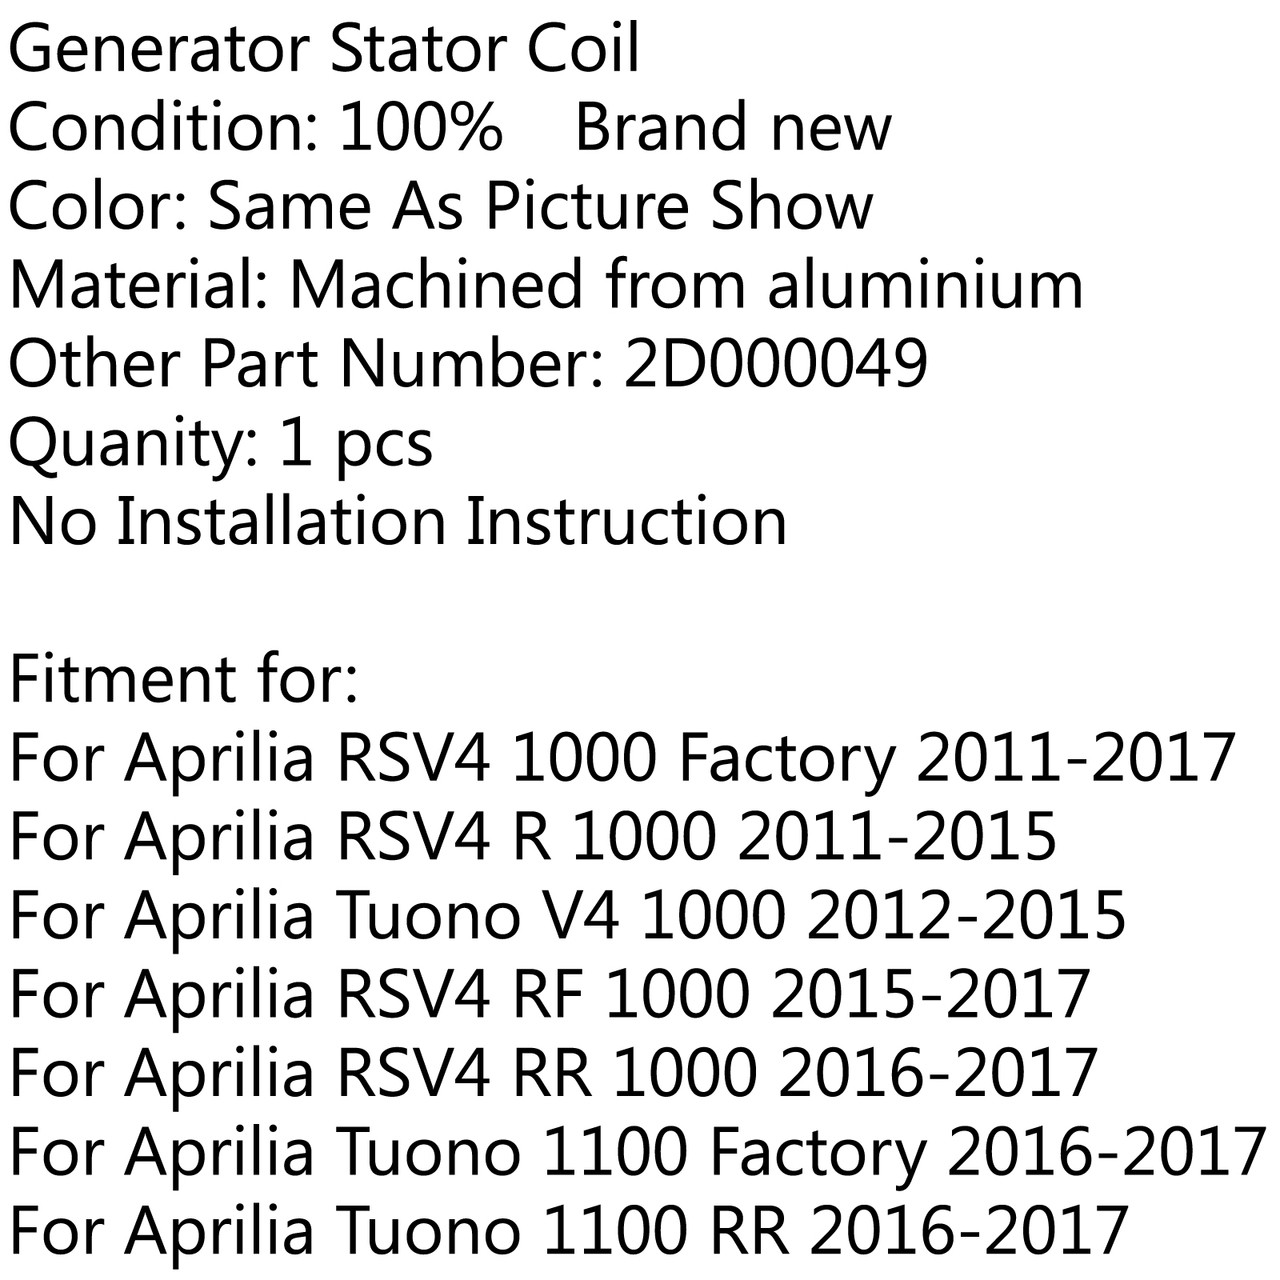 Generator Stator Coil For Aprilia RSV4 1000 Factory, RSV4 R 1000, Tuono V4 1000, RSV4 RF RR 1000, Tuono 1100 RR Factory